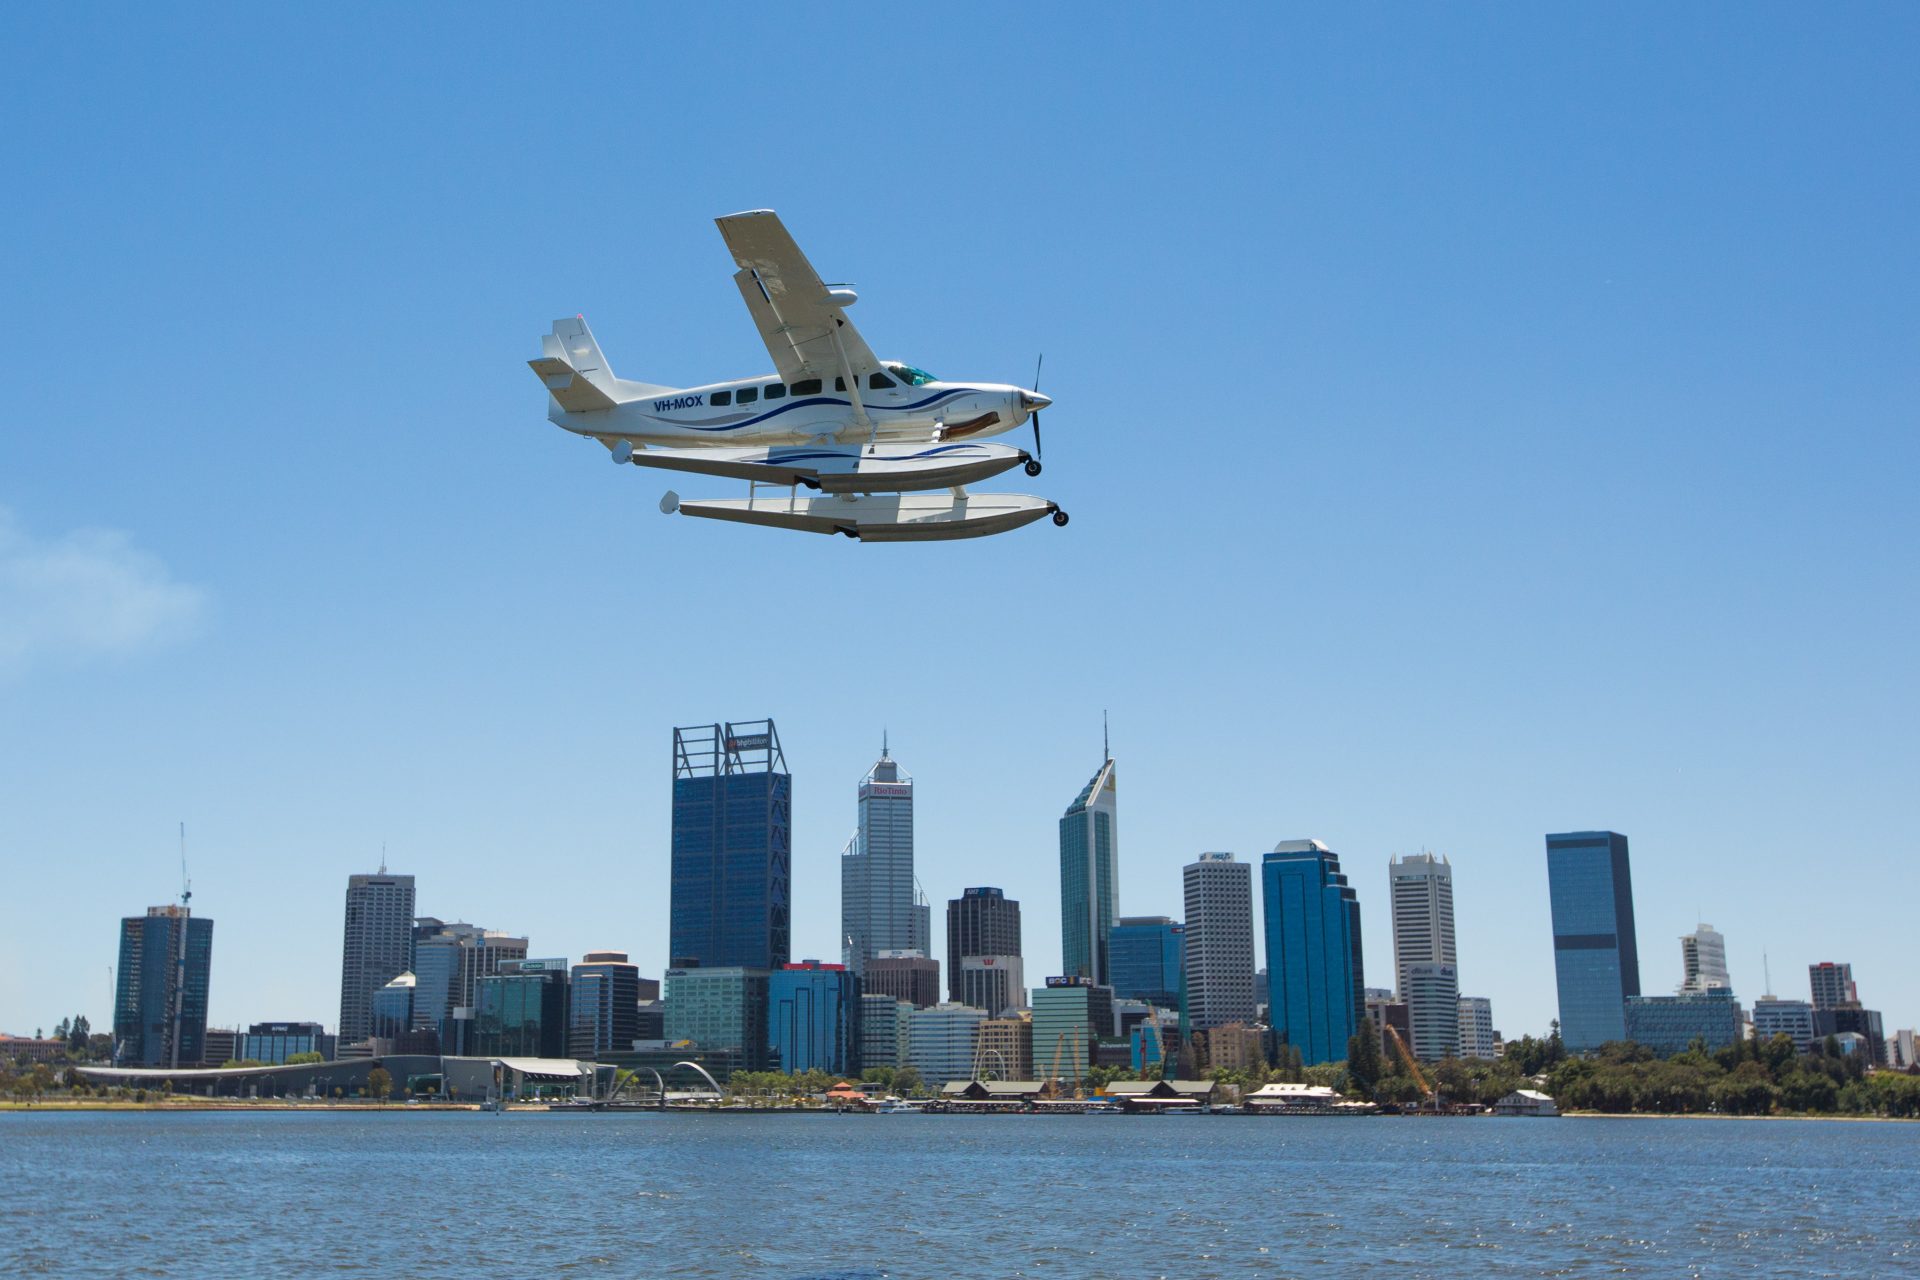 Perth City Seaplane Scenic Flight